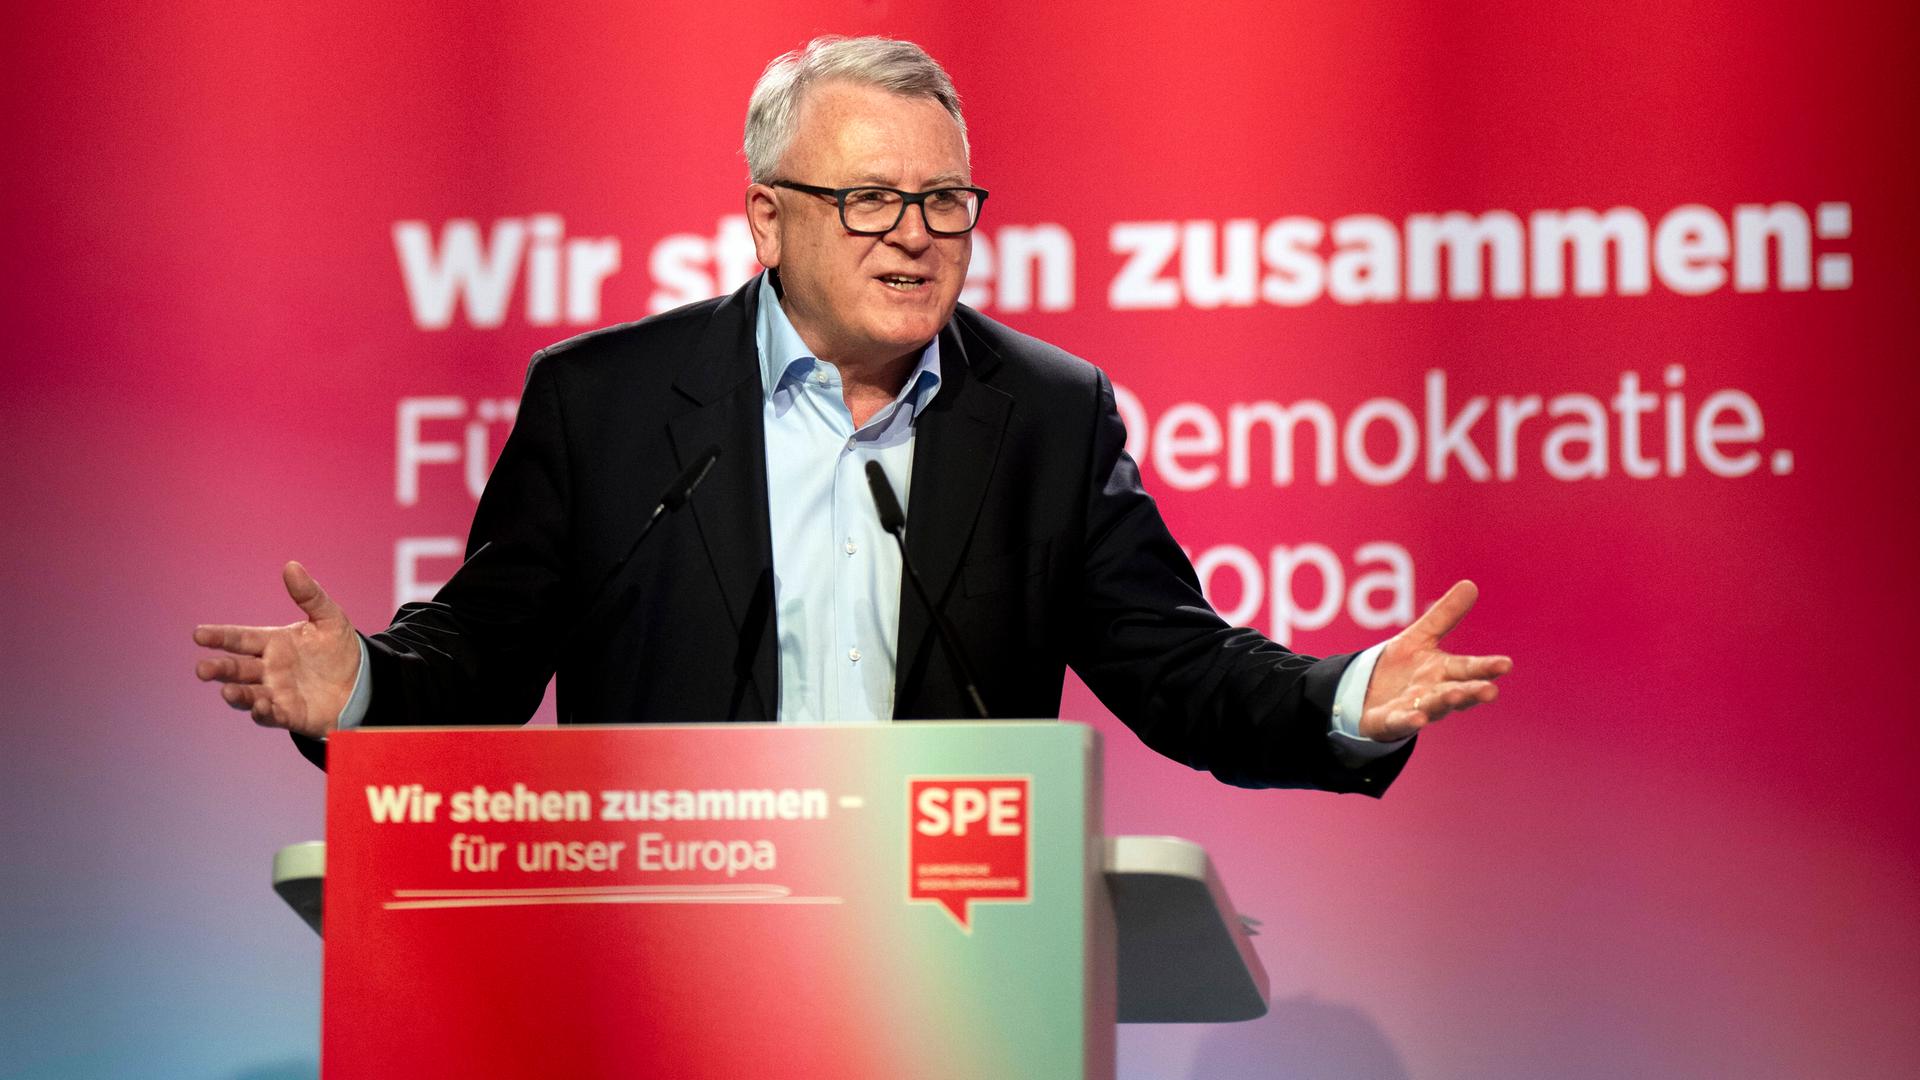 Der Spitzenkandidat der Sozialdemokratischen Partei Europas, Nicolas Schmit